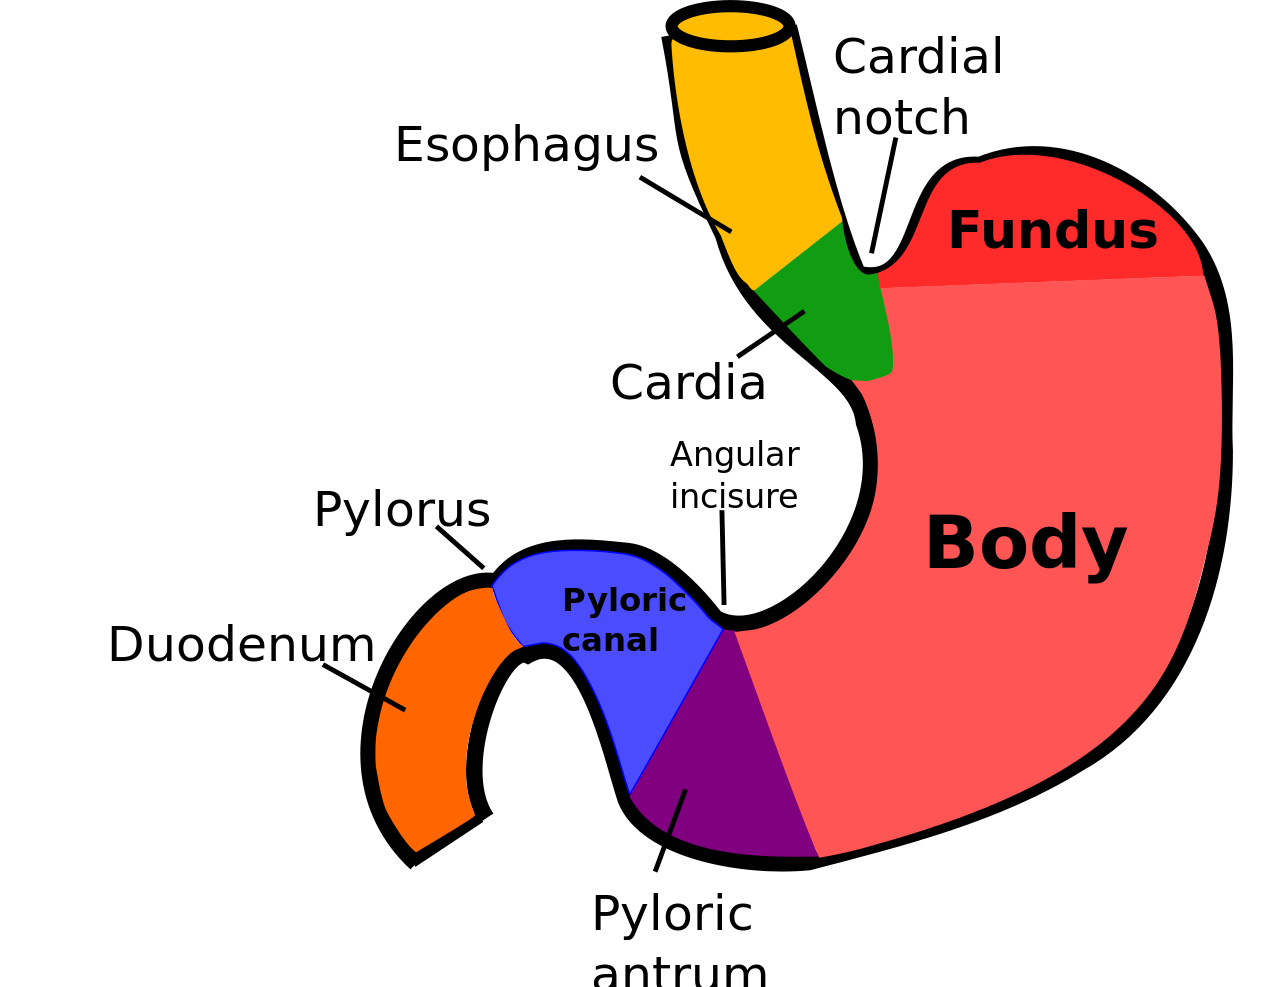 4 части желудка. Строение желудка кардиальная вырезка. Желудок кардиальный отдел желудка. Пилорический отдел желудка схема. Кардиальная часть желудка анатомия.